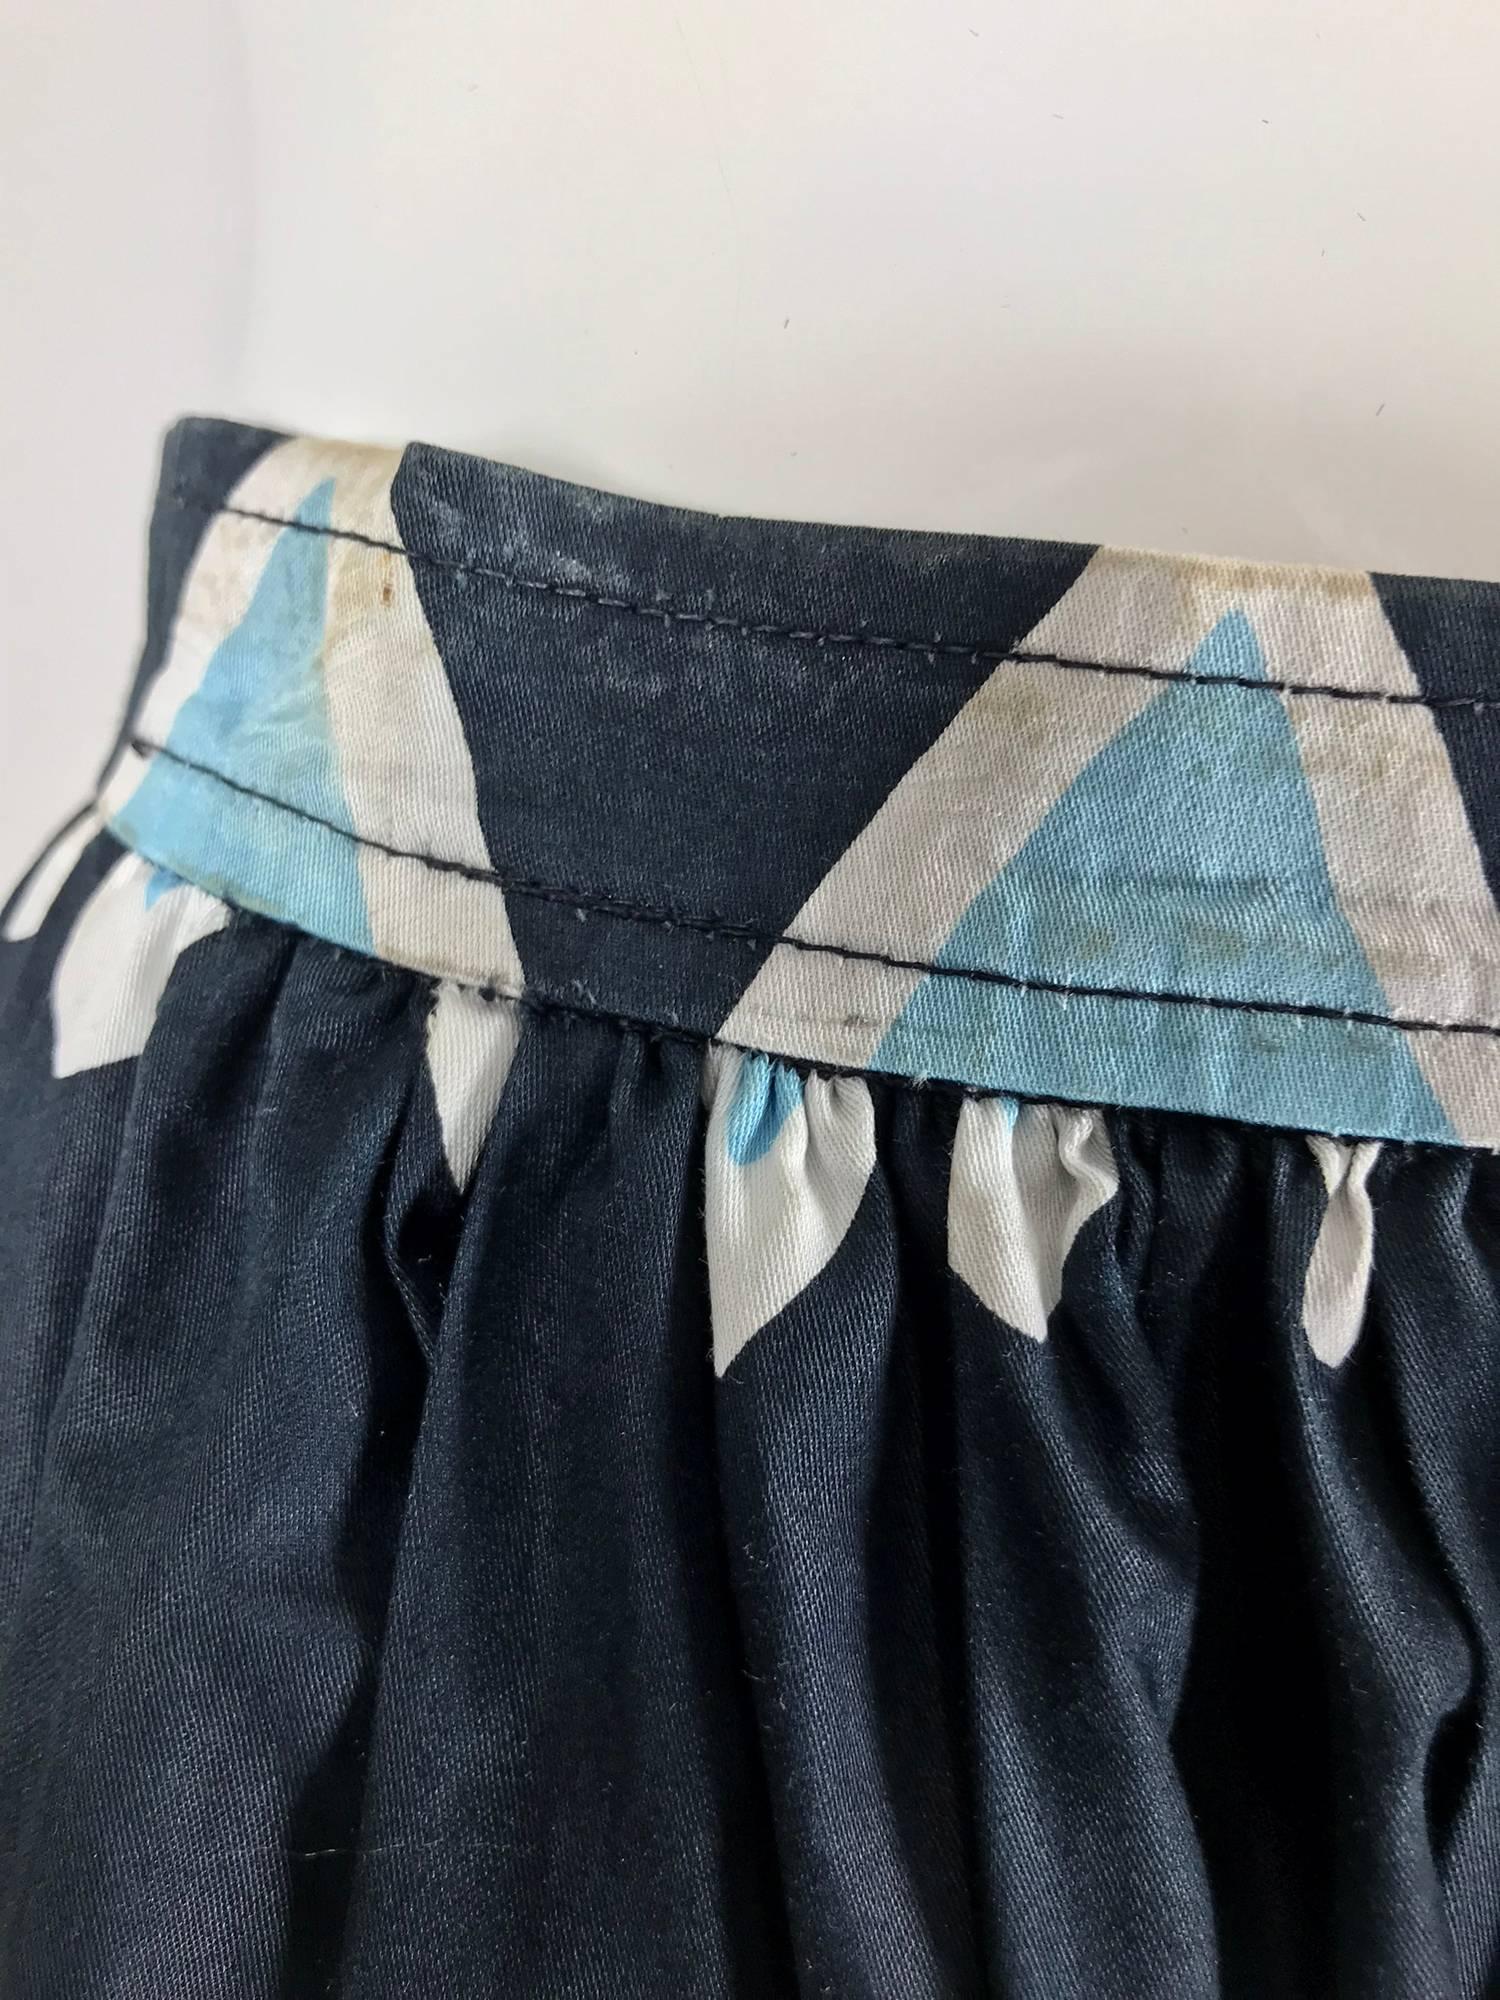 Yves Saint Laurent Iman worn documented cotton skirt, S / S 1980 7